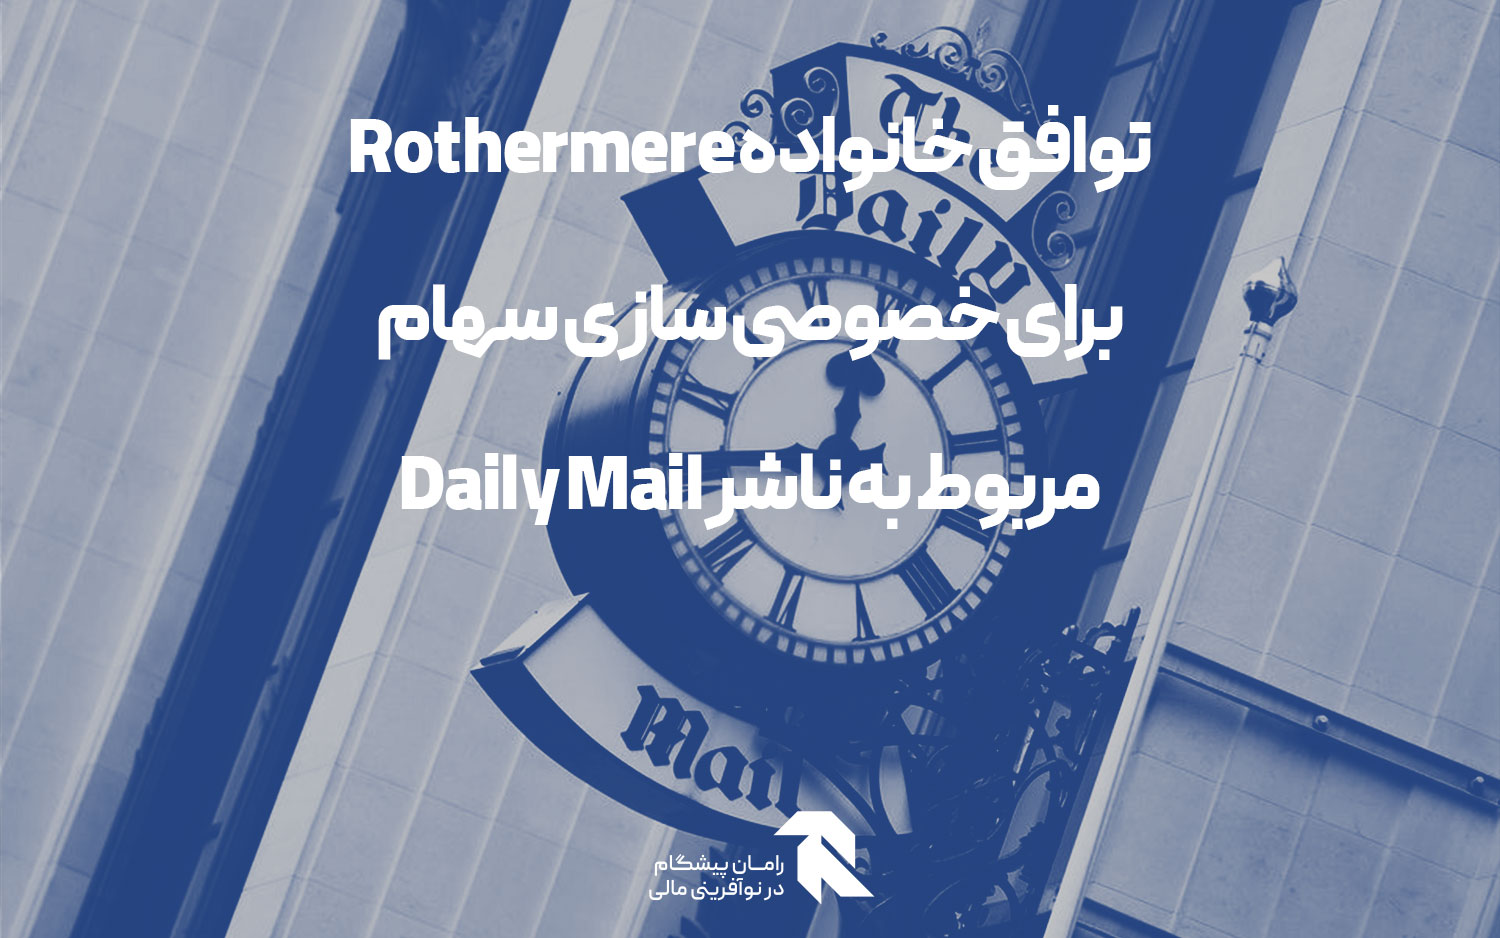 توافق خانواده Rothermere برای خصوصی سازی سهام مربوط به ناشر Daily Mail